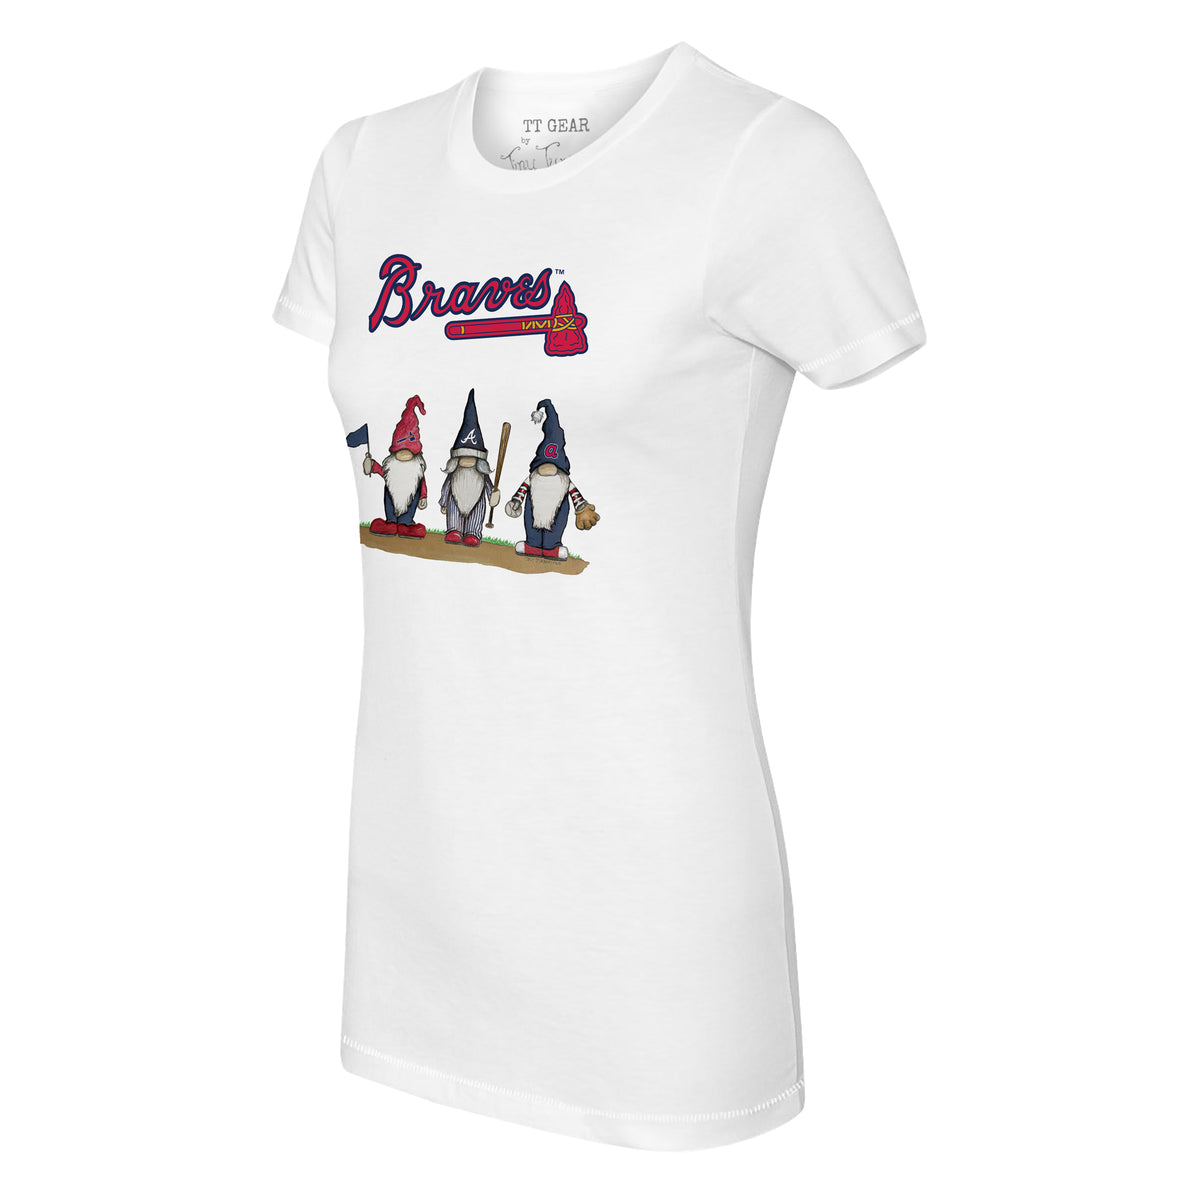 Atlanta Braves Gnomes Tee Shirt